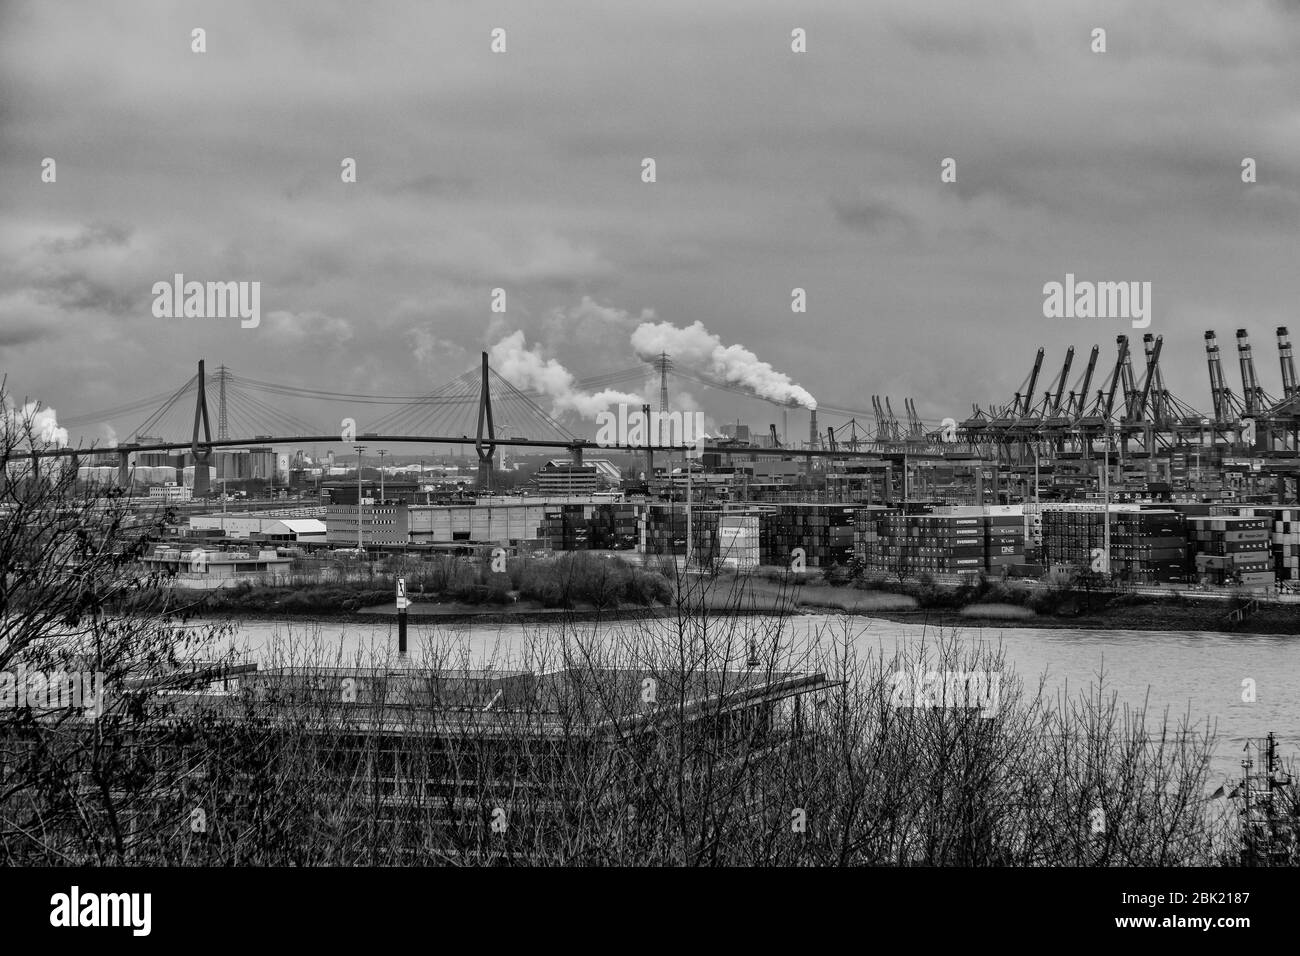 Atemberaubende Panoramasicht auf den Hamburger Hafen mit Containerterminal und der Köhlbrandbrücke an der Elbe mit dramatischem Himmel/Wolken, deutsch Stockfoto